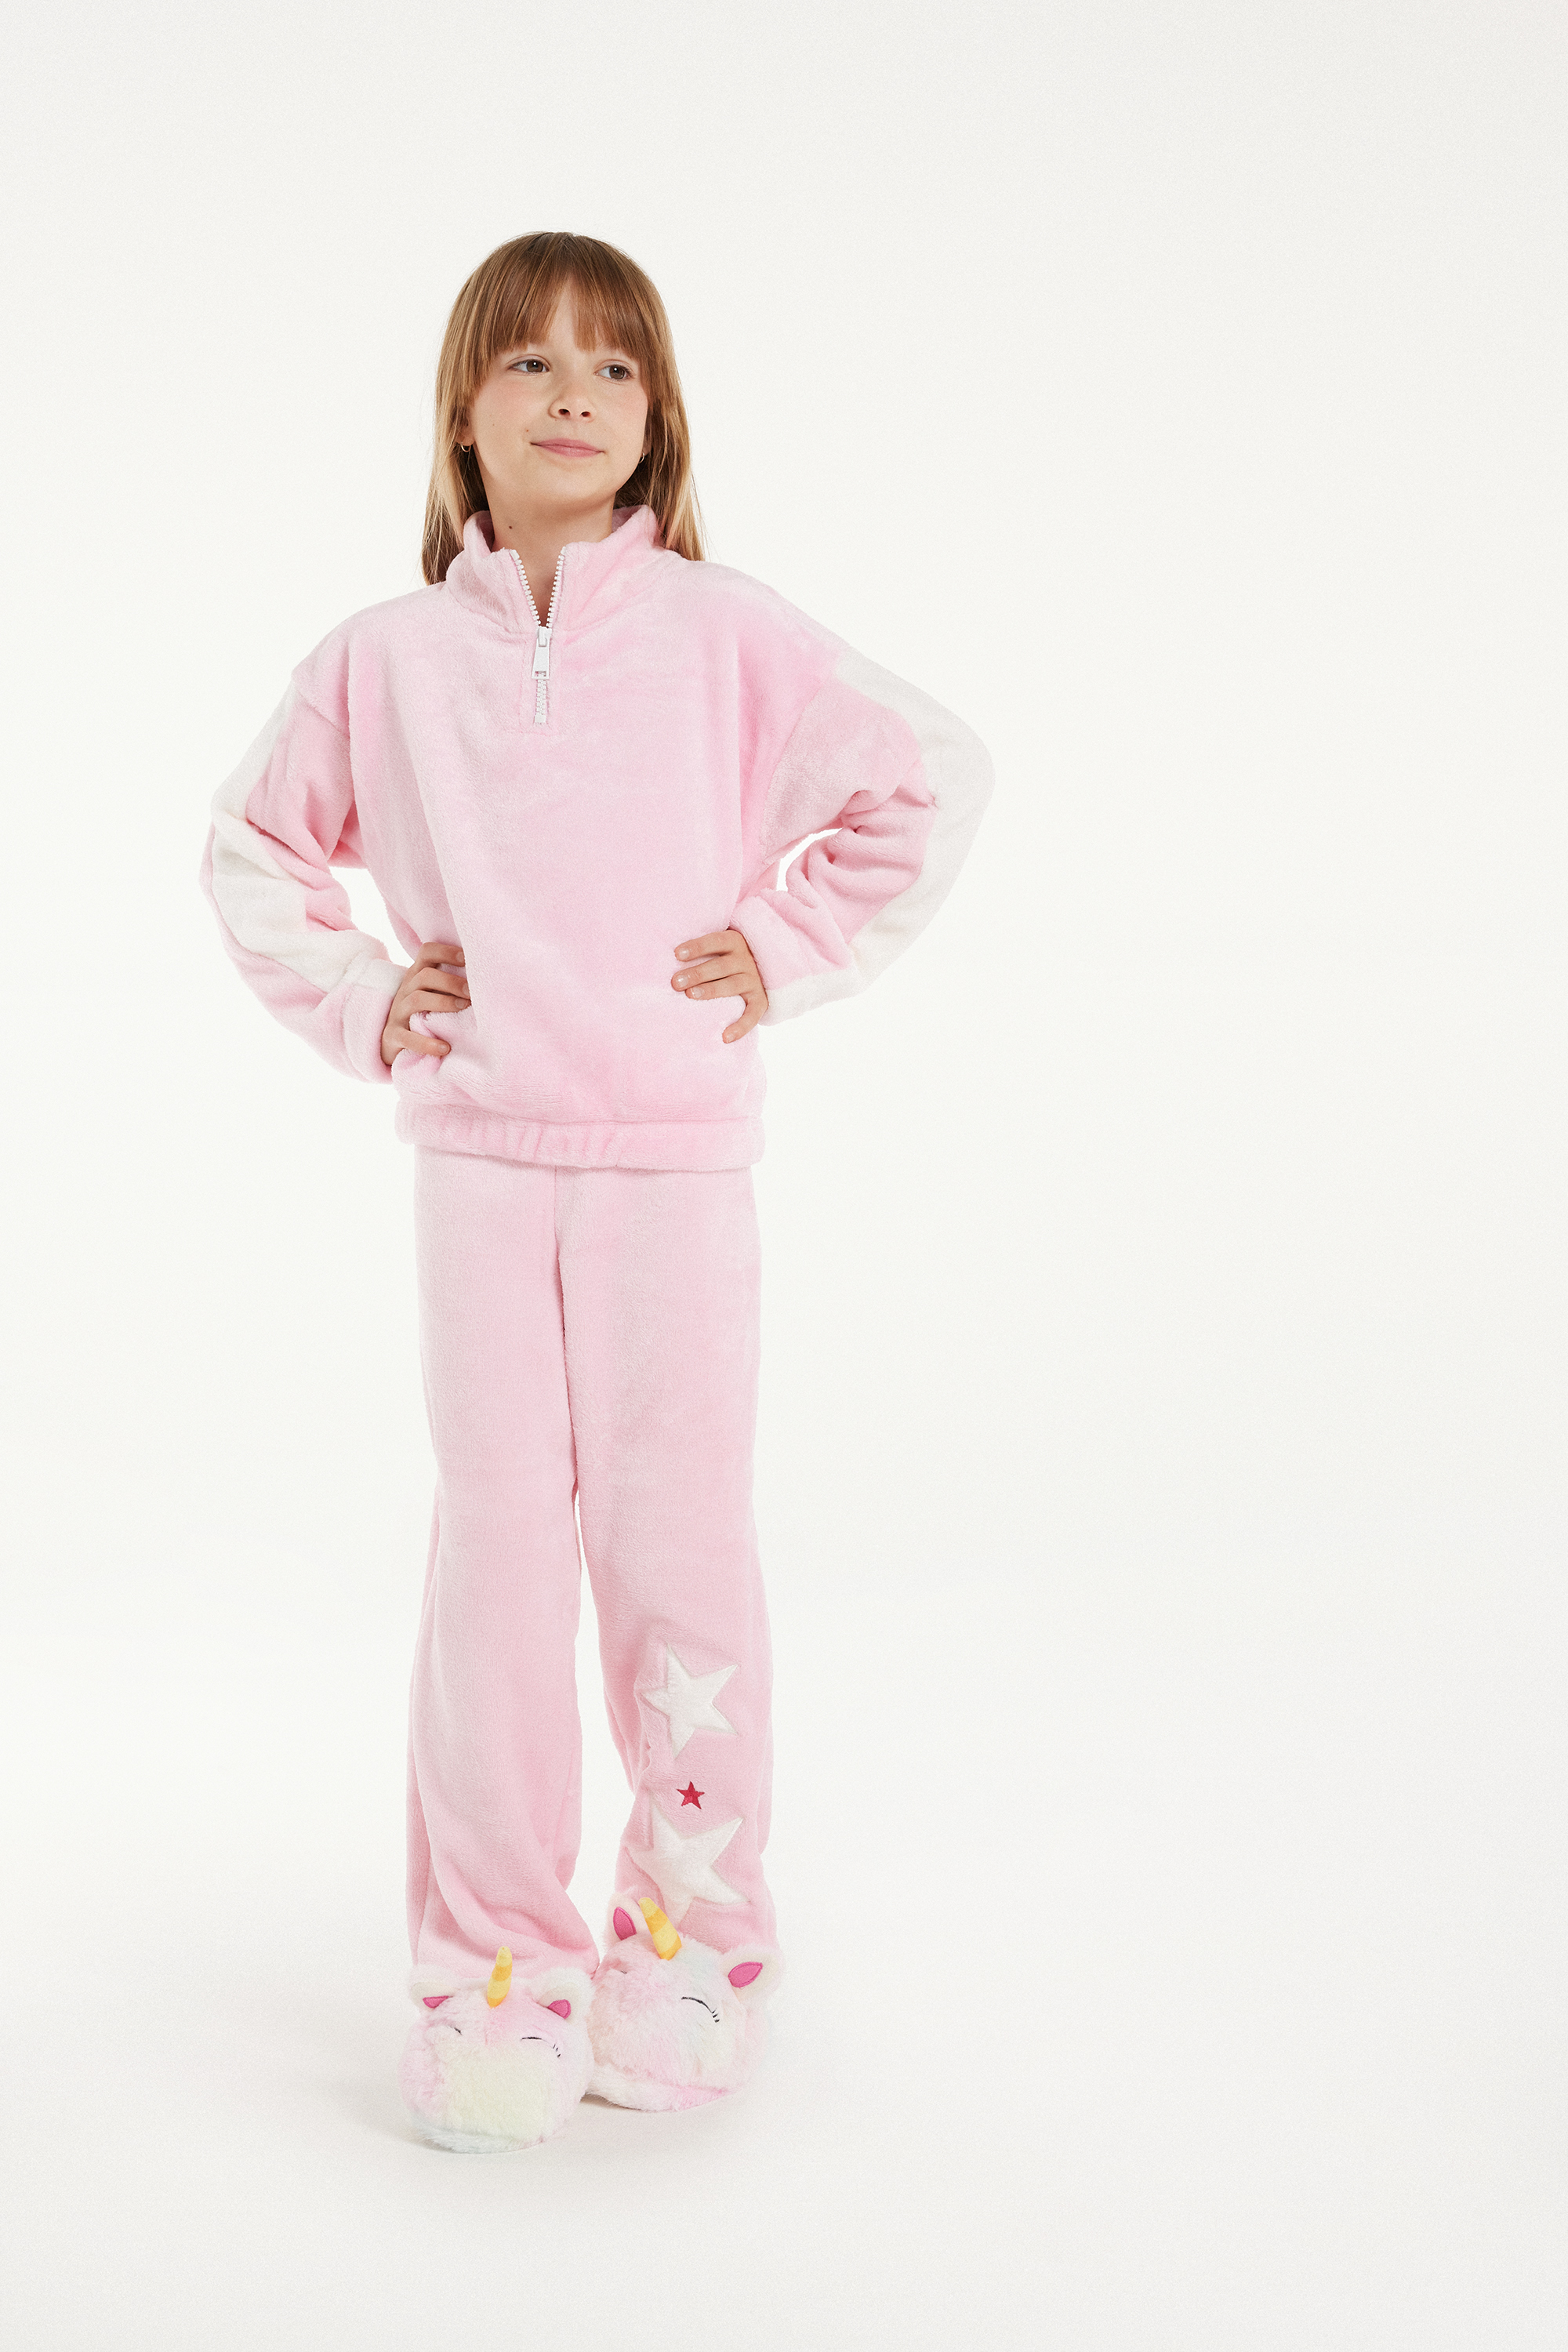 Pijama Comprido em Polar com Estrelas Menina